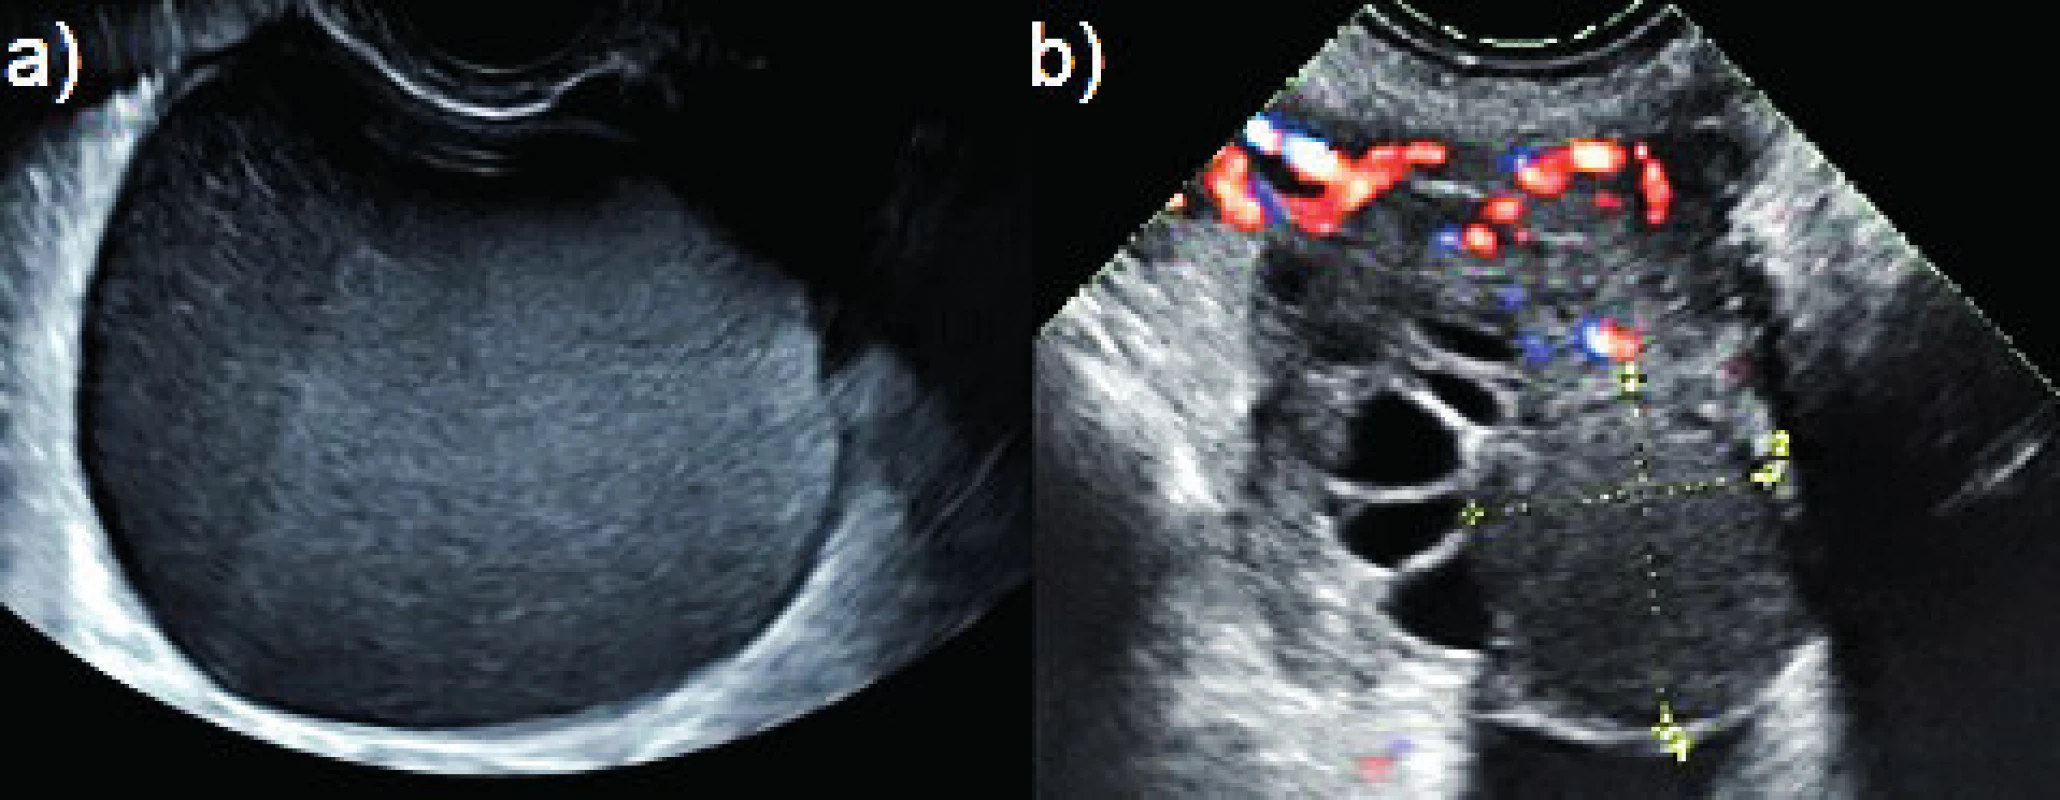 Typické endometroidní cysty<br>
(a) unilokulární hladkostěnná cysta s obsahem vzhledu mléčného
skla bez intraluminálních prominencí, bez přítomnosti rezidua
normální ovariální tkáně; (b) intraovariálně uložená endometroidní
cysta (přerušované čáry) bez vaskularizace ve stěně, obklopená
reziduální ovariální tkání.